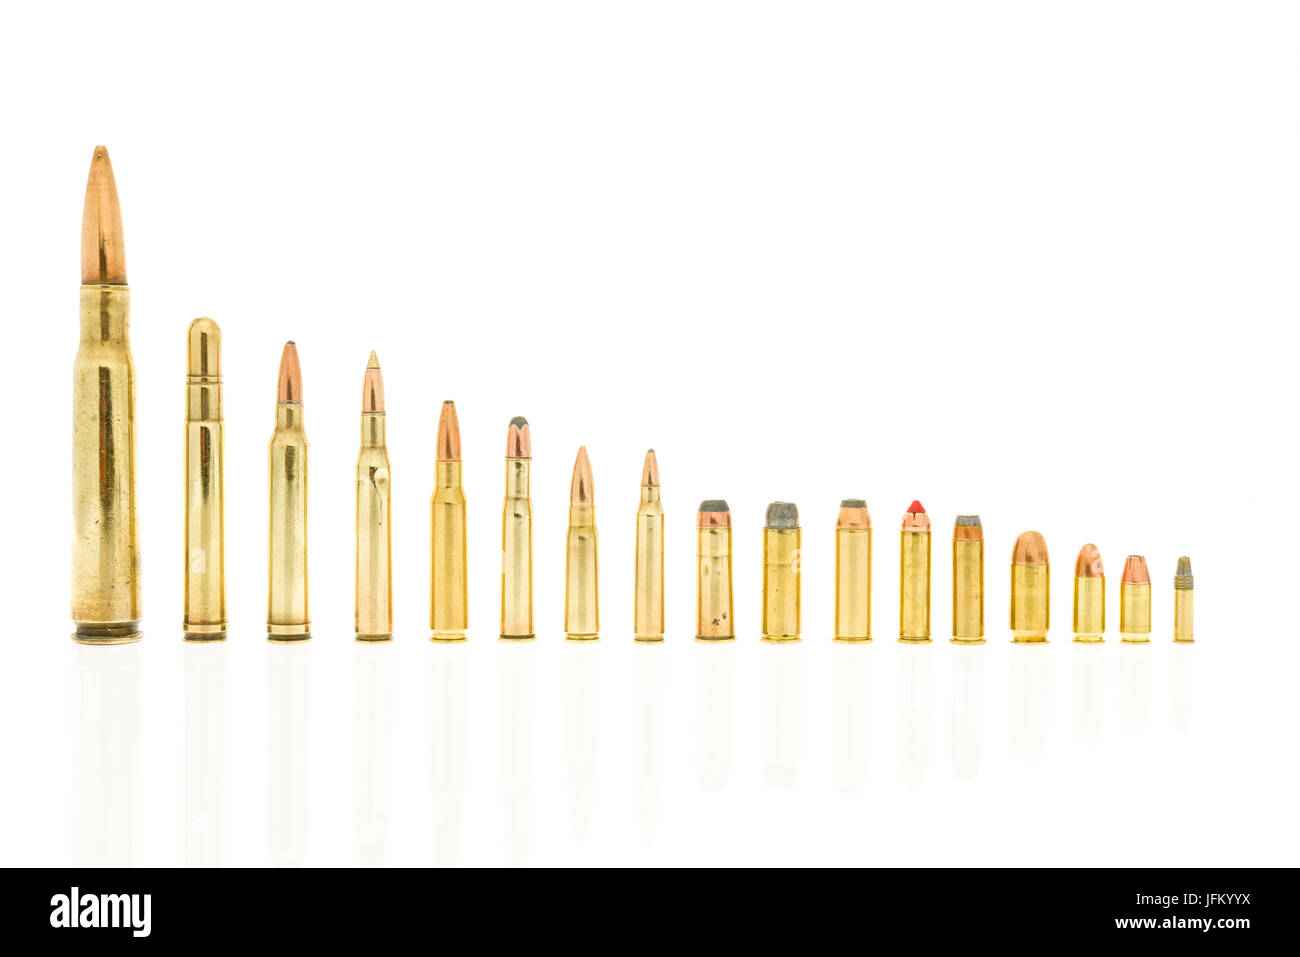 Handgun and rifle ammo Stock Photo